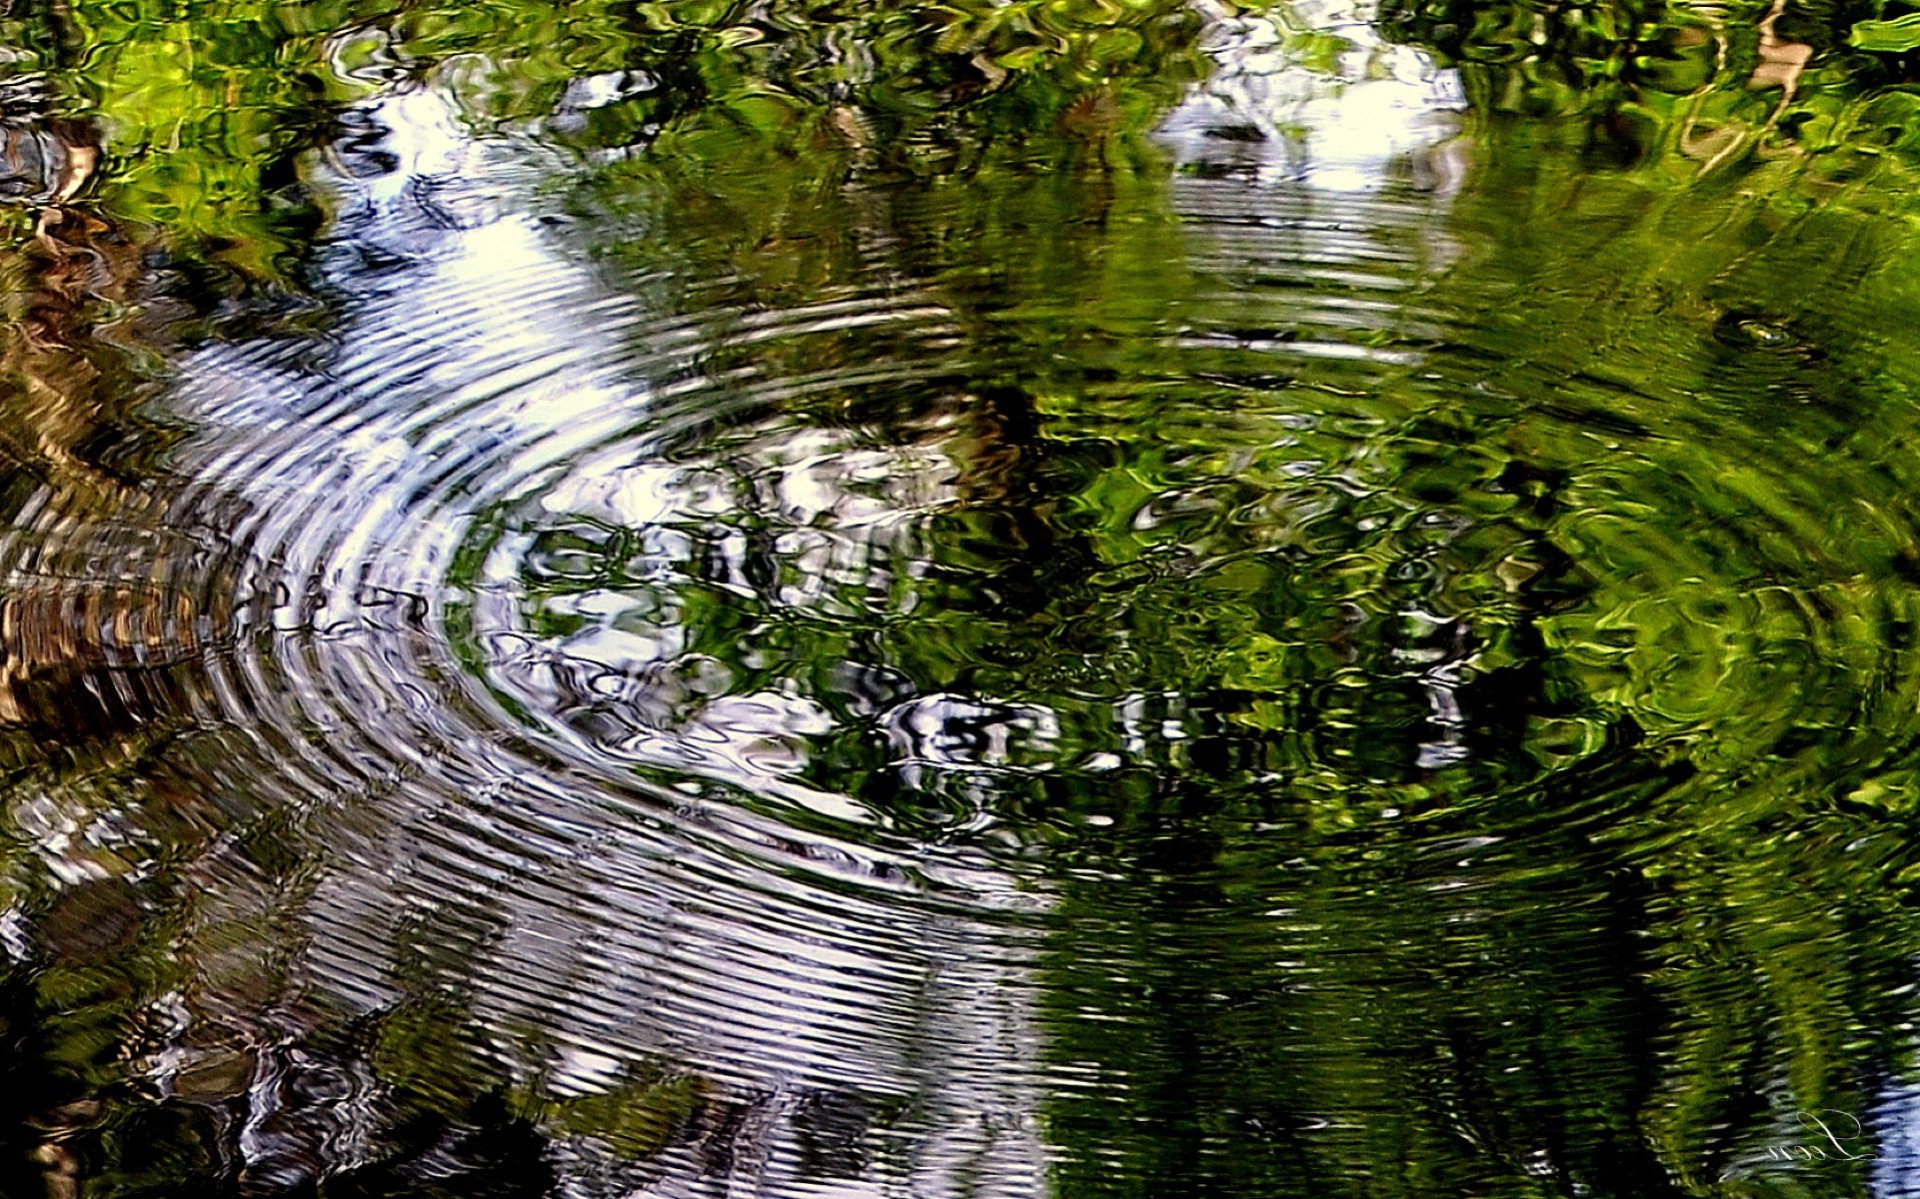 реки пруды и ручьи прудов и ручьев воды природа отражение лист бассейн лето река на открытом воздухе флора озеро пейзаж парк древесины дерево